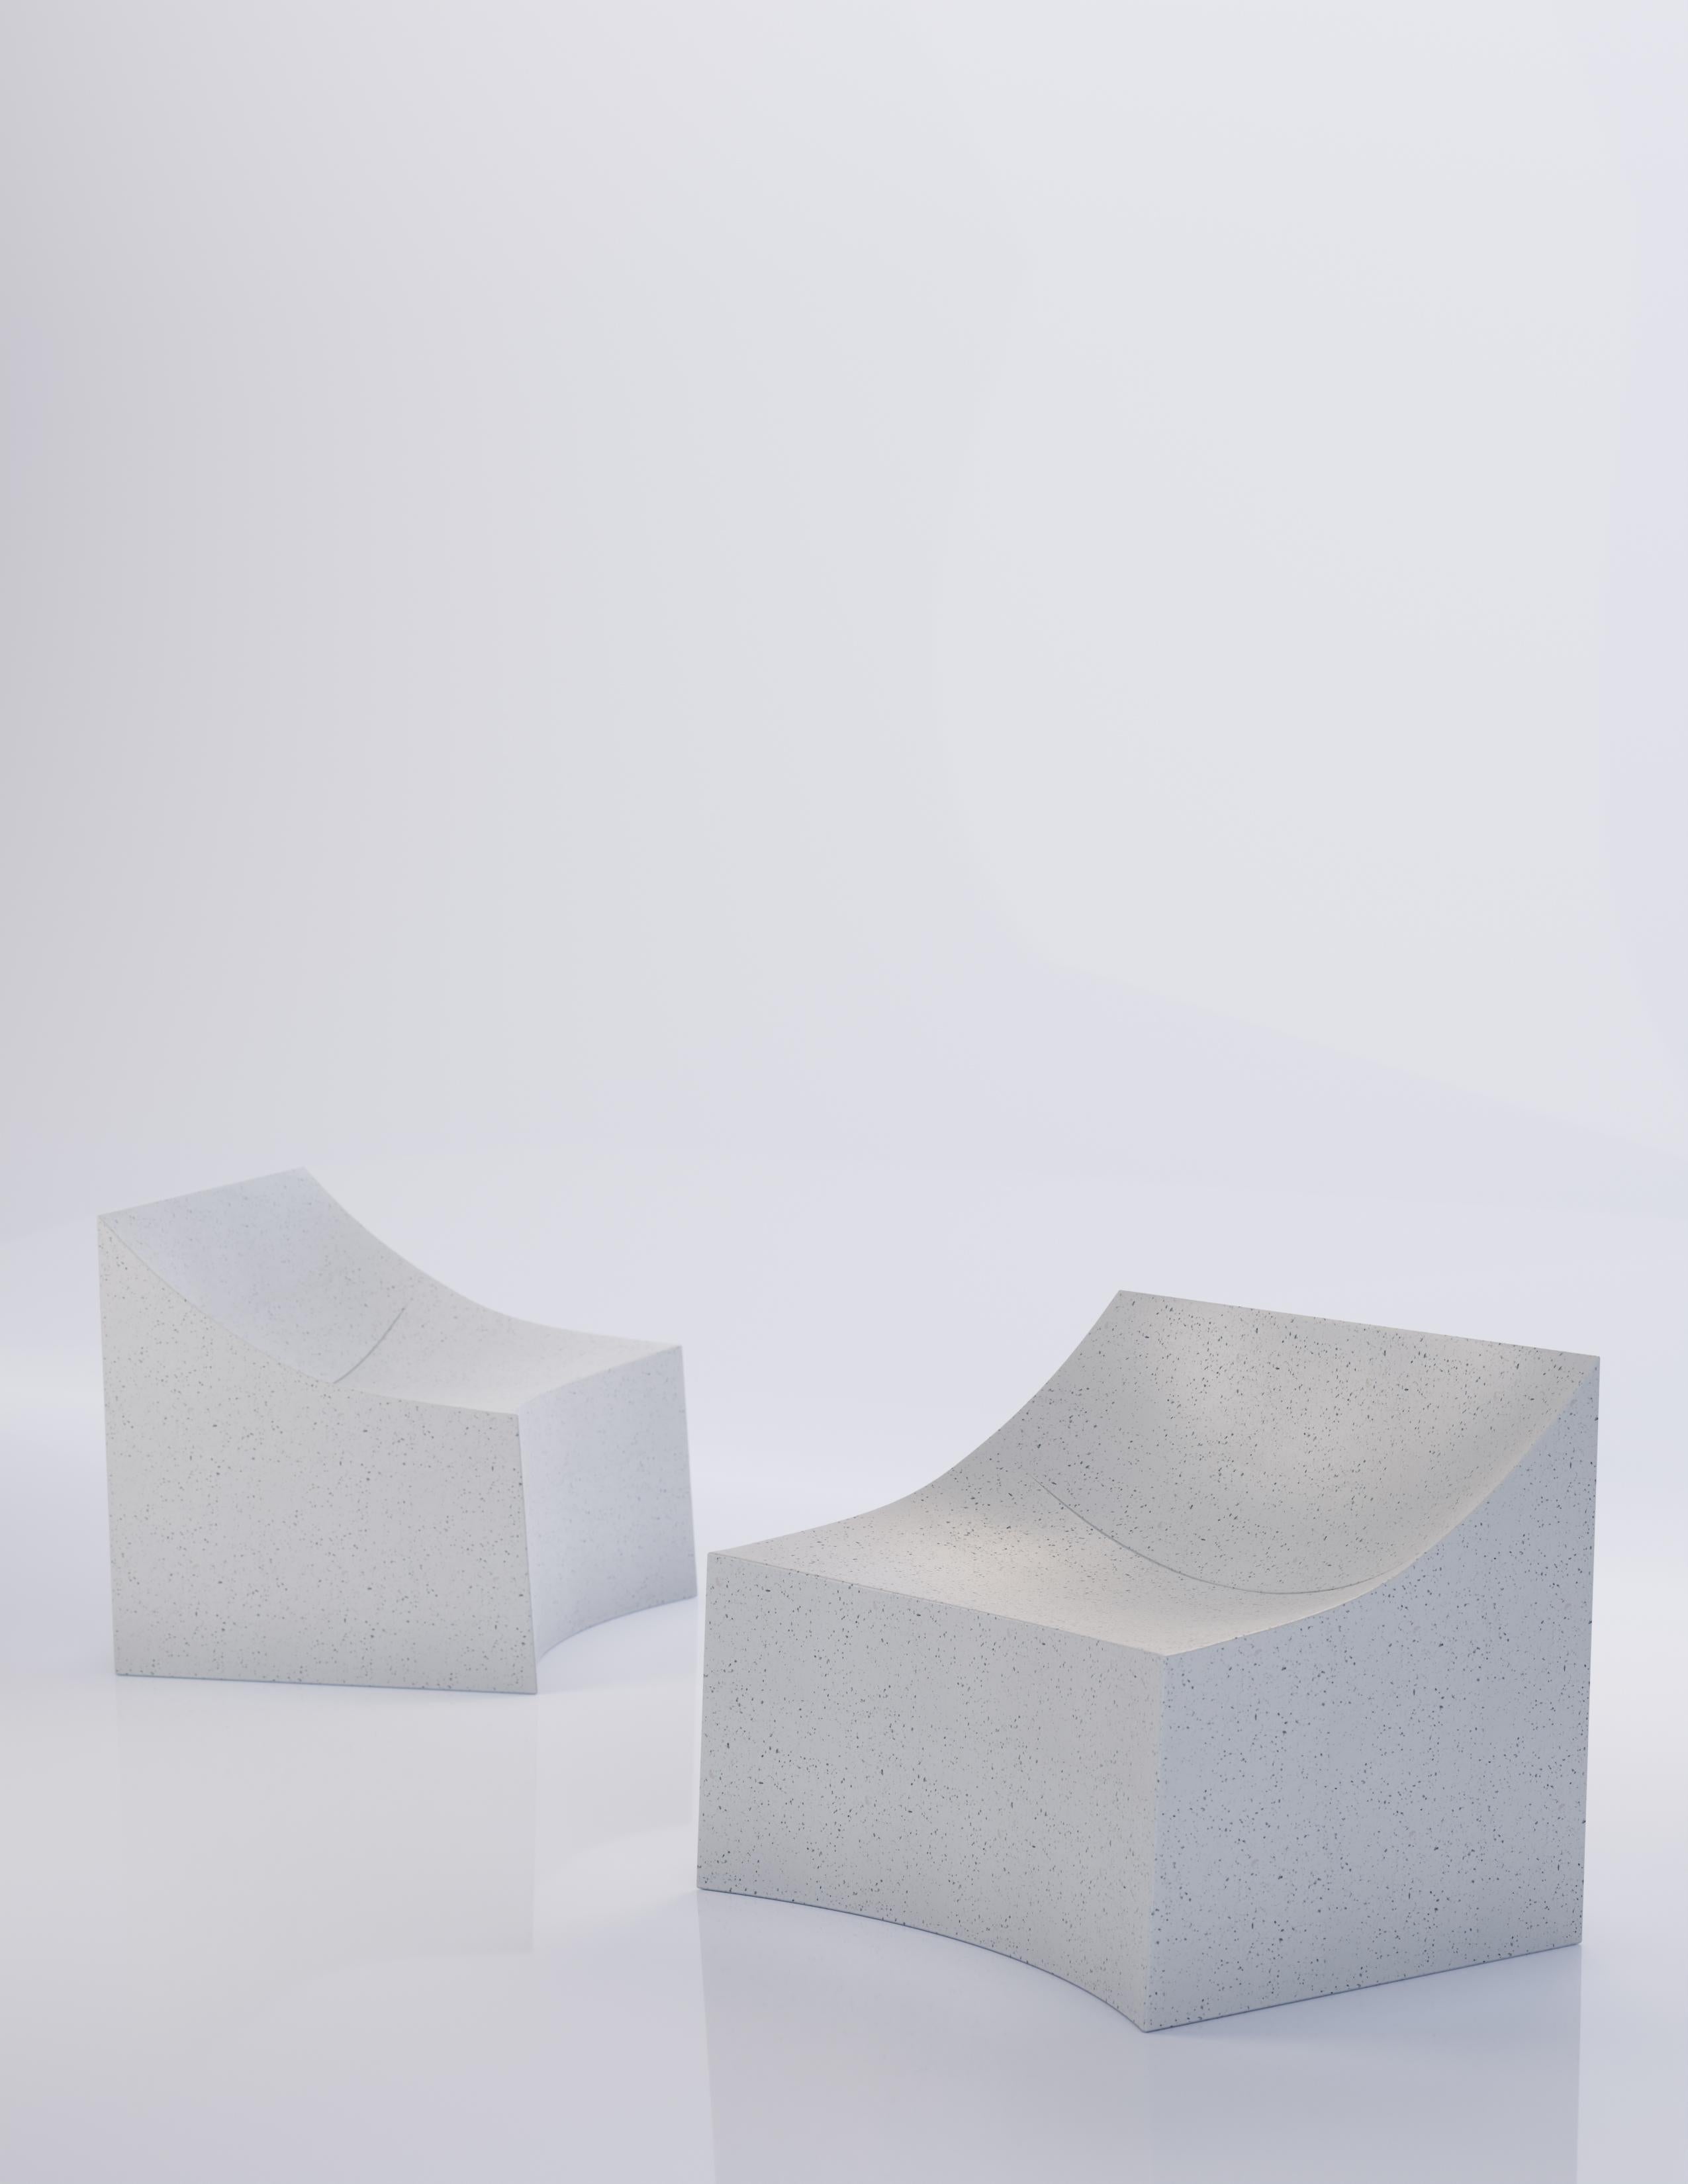 Une silhouette légèrement incurvée confère confort et élégance à cette chaise longue monolithique. Un léger renfoncement dans l'assise détourne l'attention de la pierre et met subtilement en valeur la légèreté de notre construction.

Dimensions :